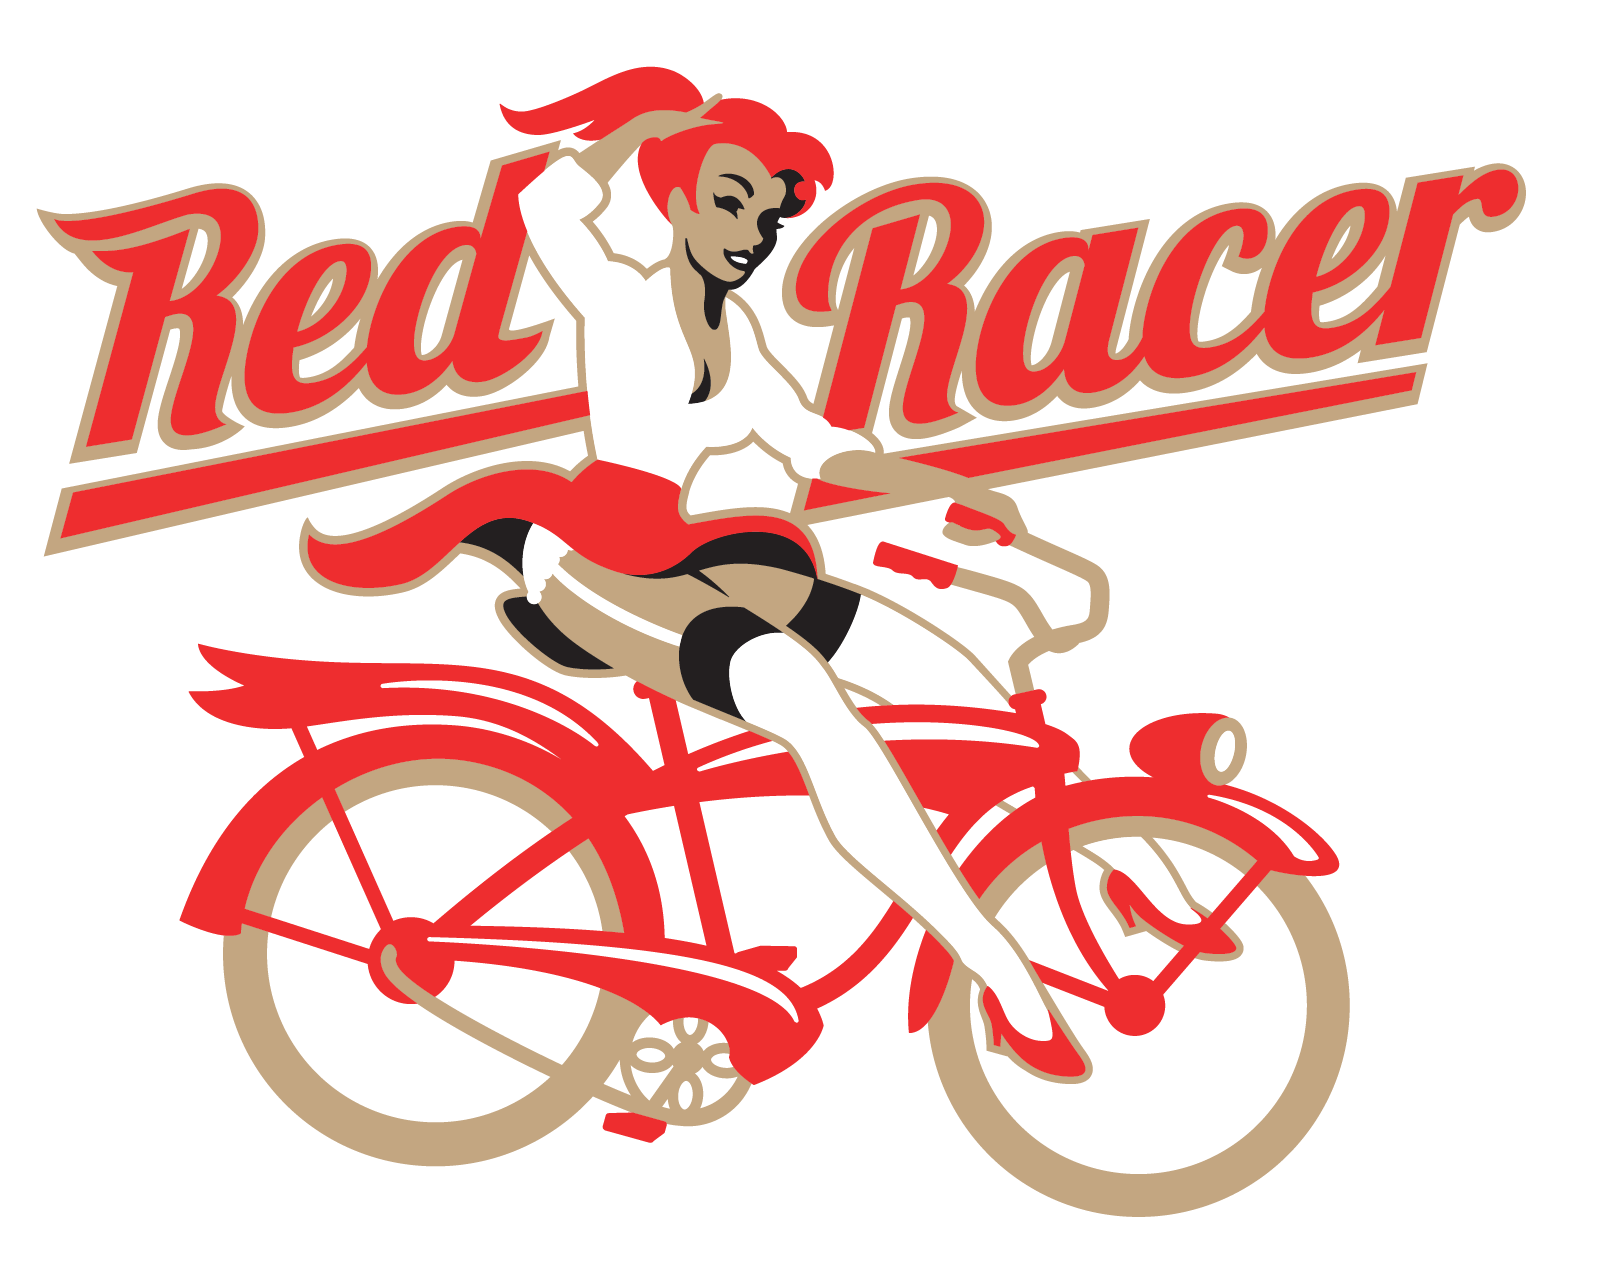 Red Racer Beer